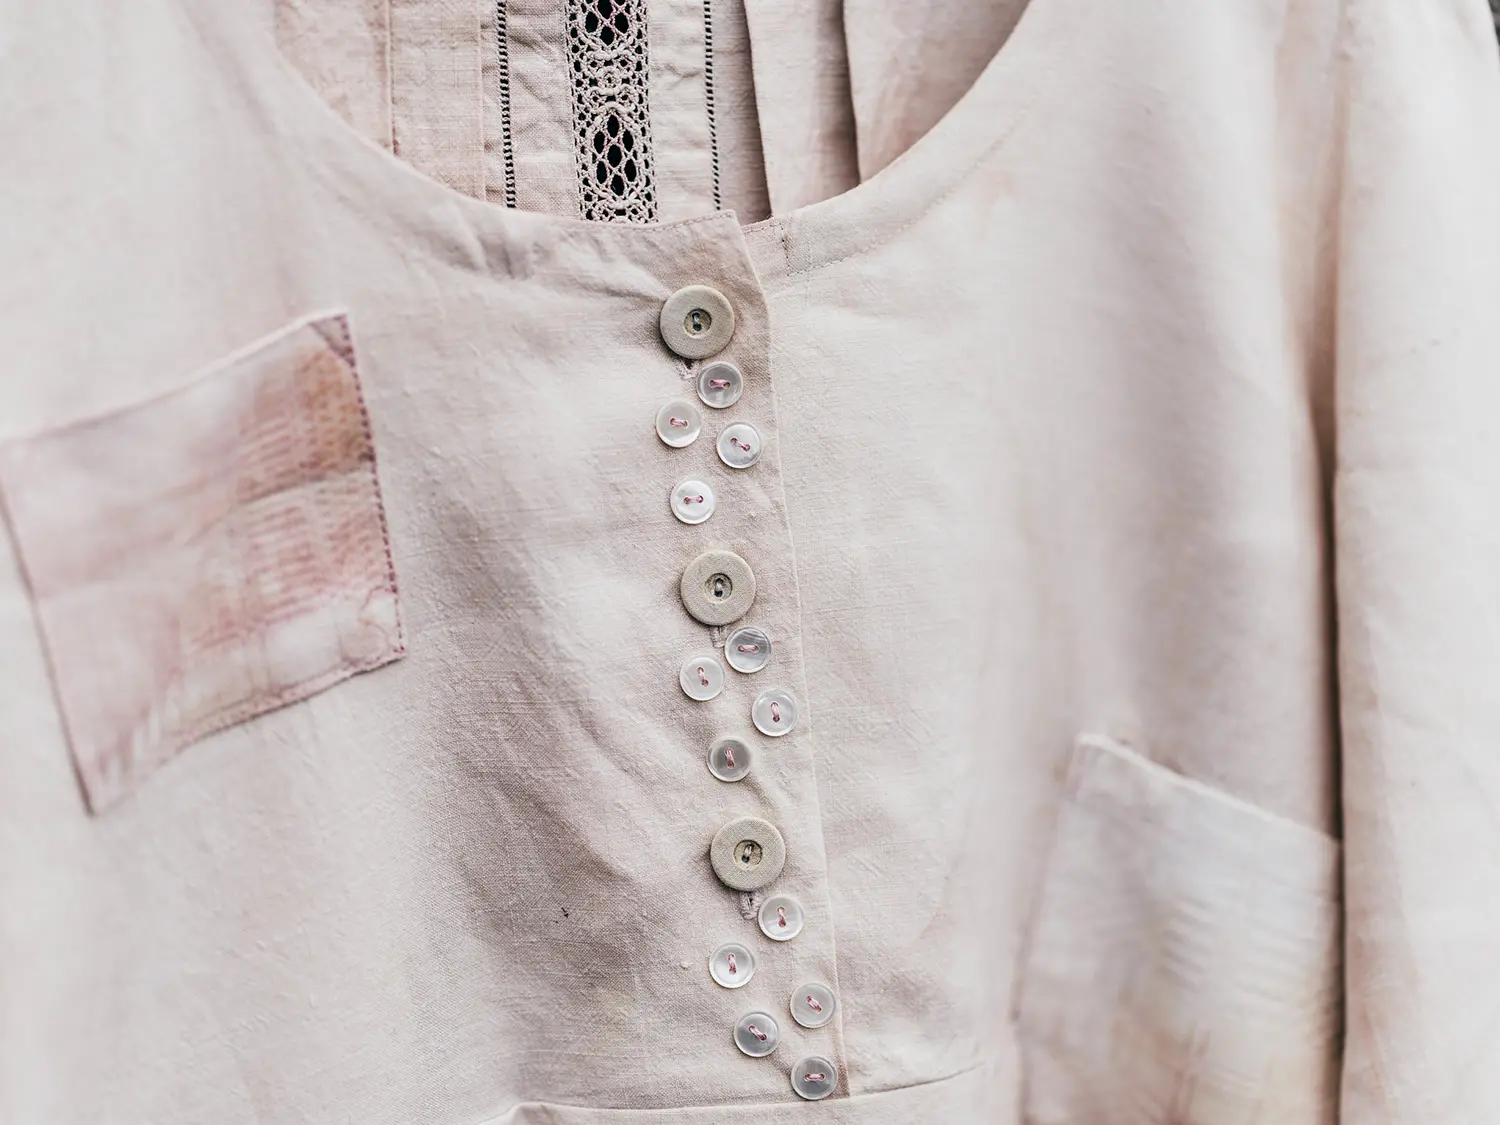 Närbild på en blus eller skjorta med många knappar sydda som dekoration på knappslån.